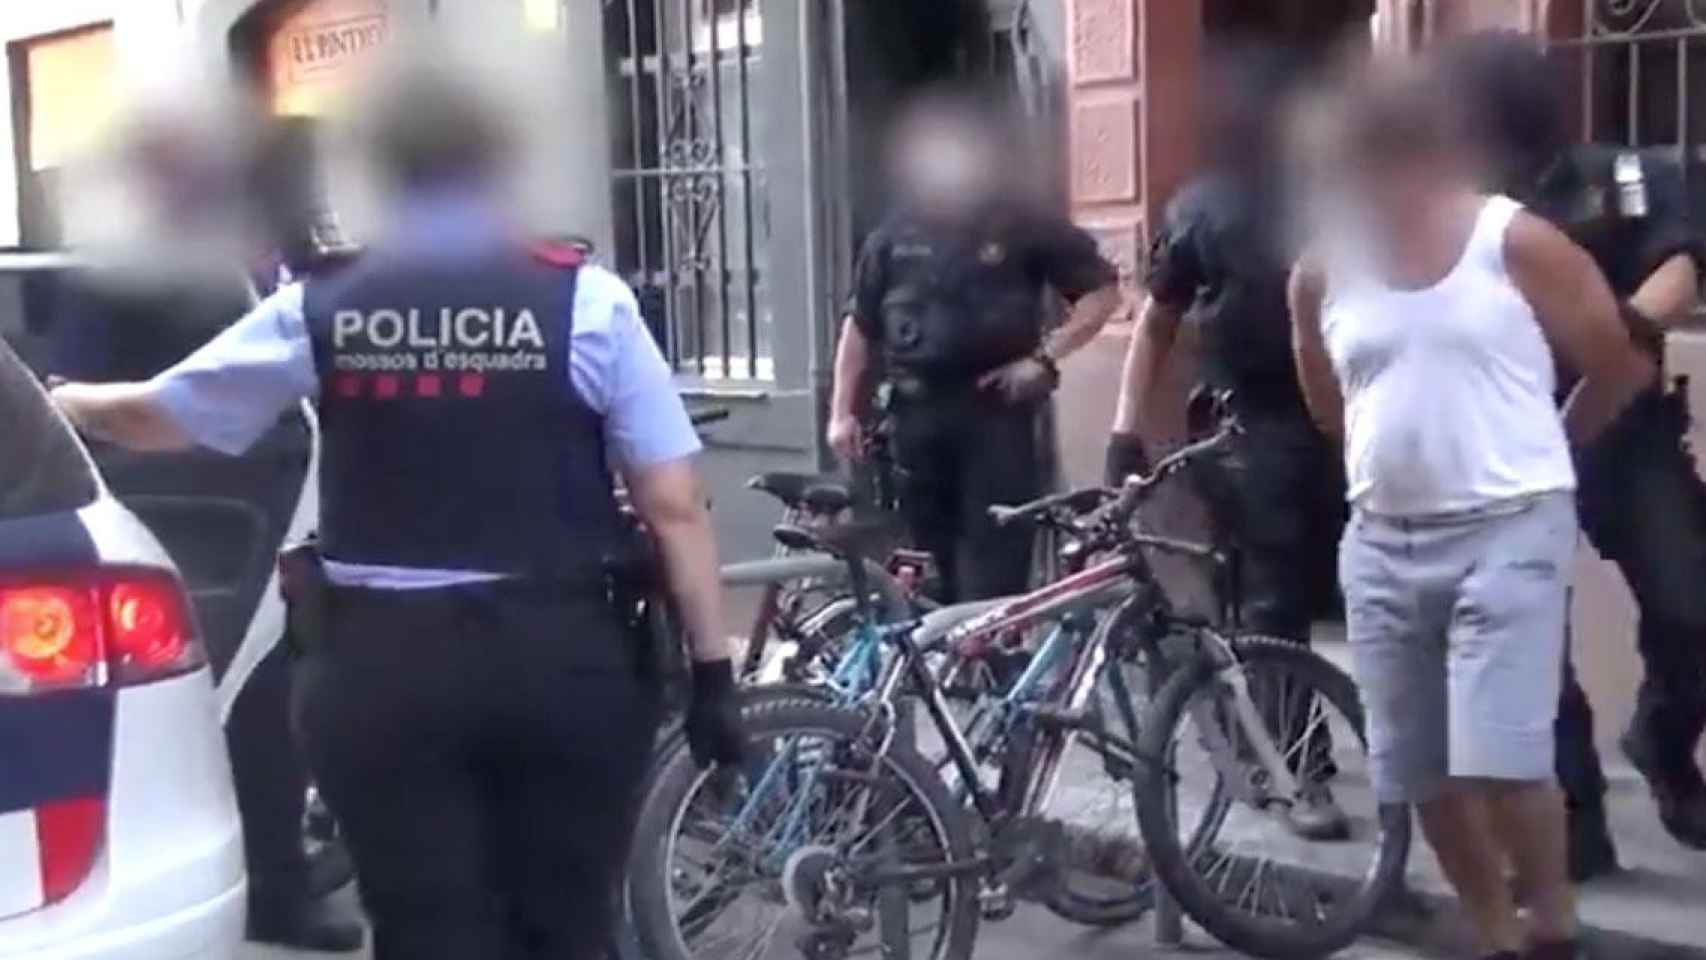 Segundo yihadista detenido en un piso de la Barceloneta / MOSSOS D'ESQUADRA